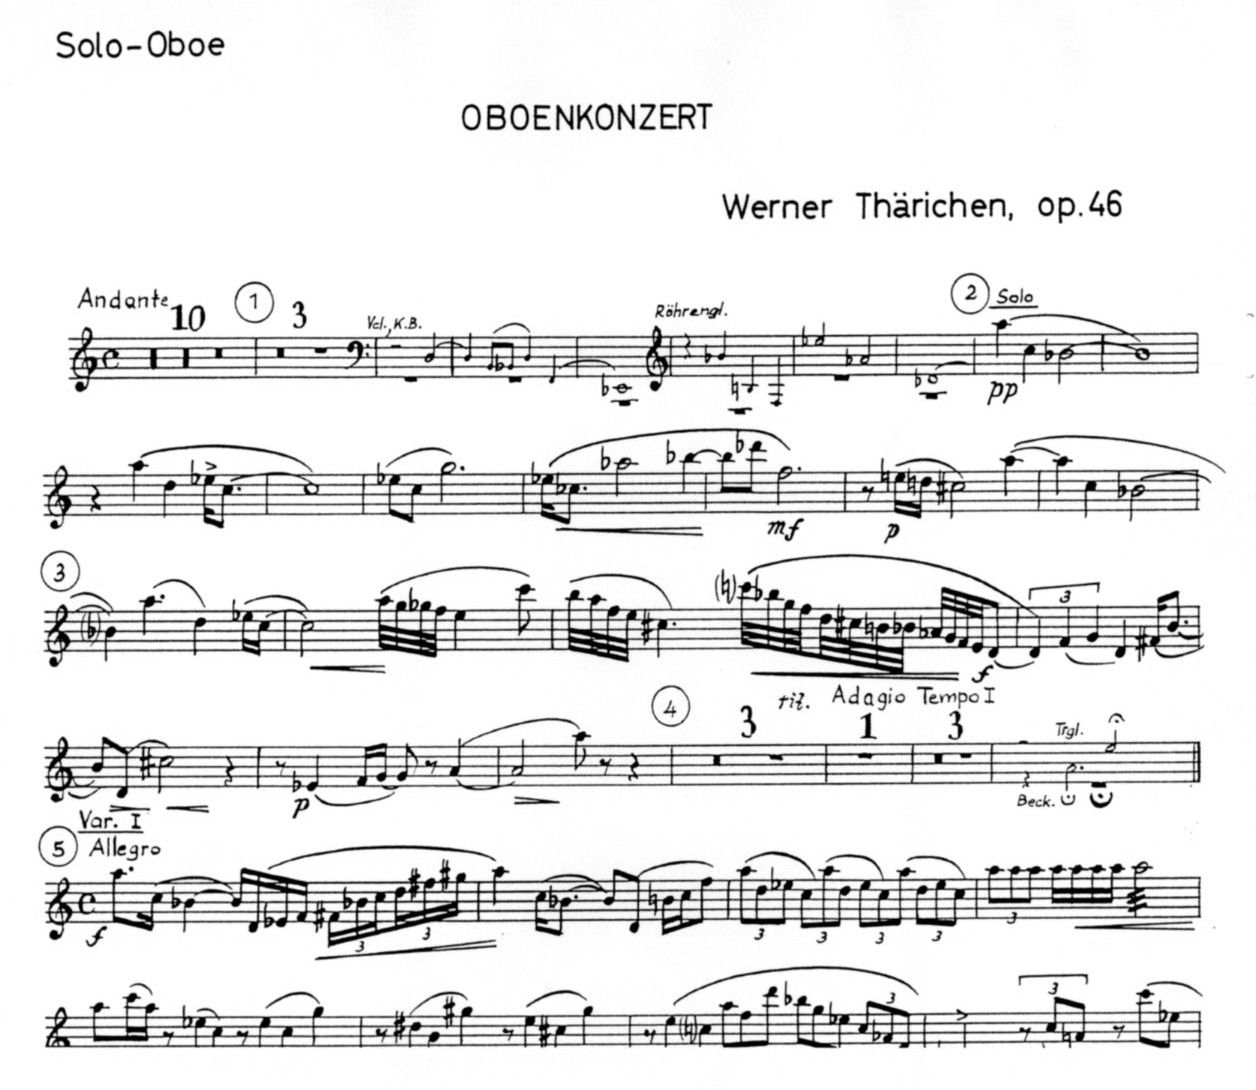 W. Thrichen: Oboenkonzert Opus 46<br>Solostimme